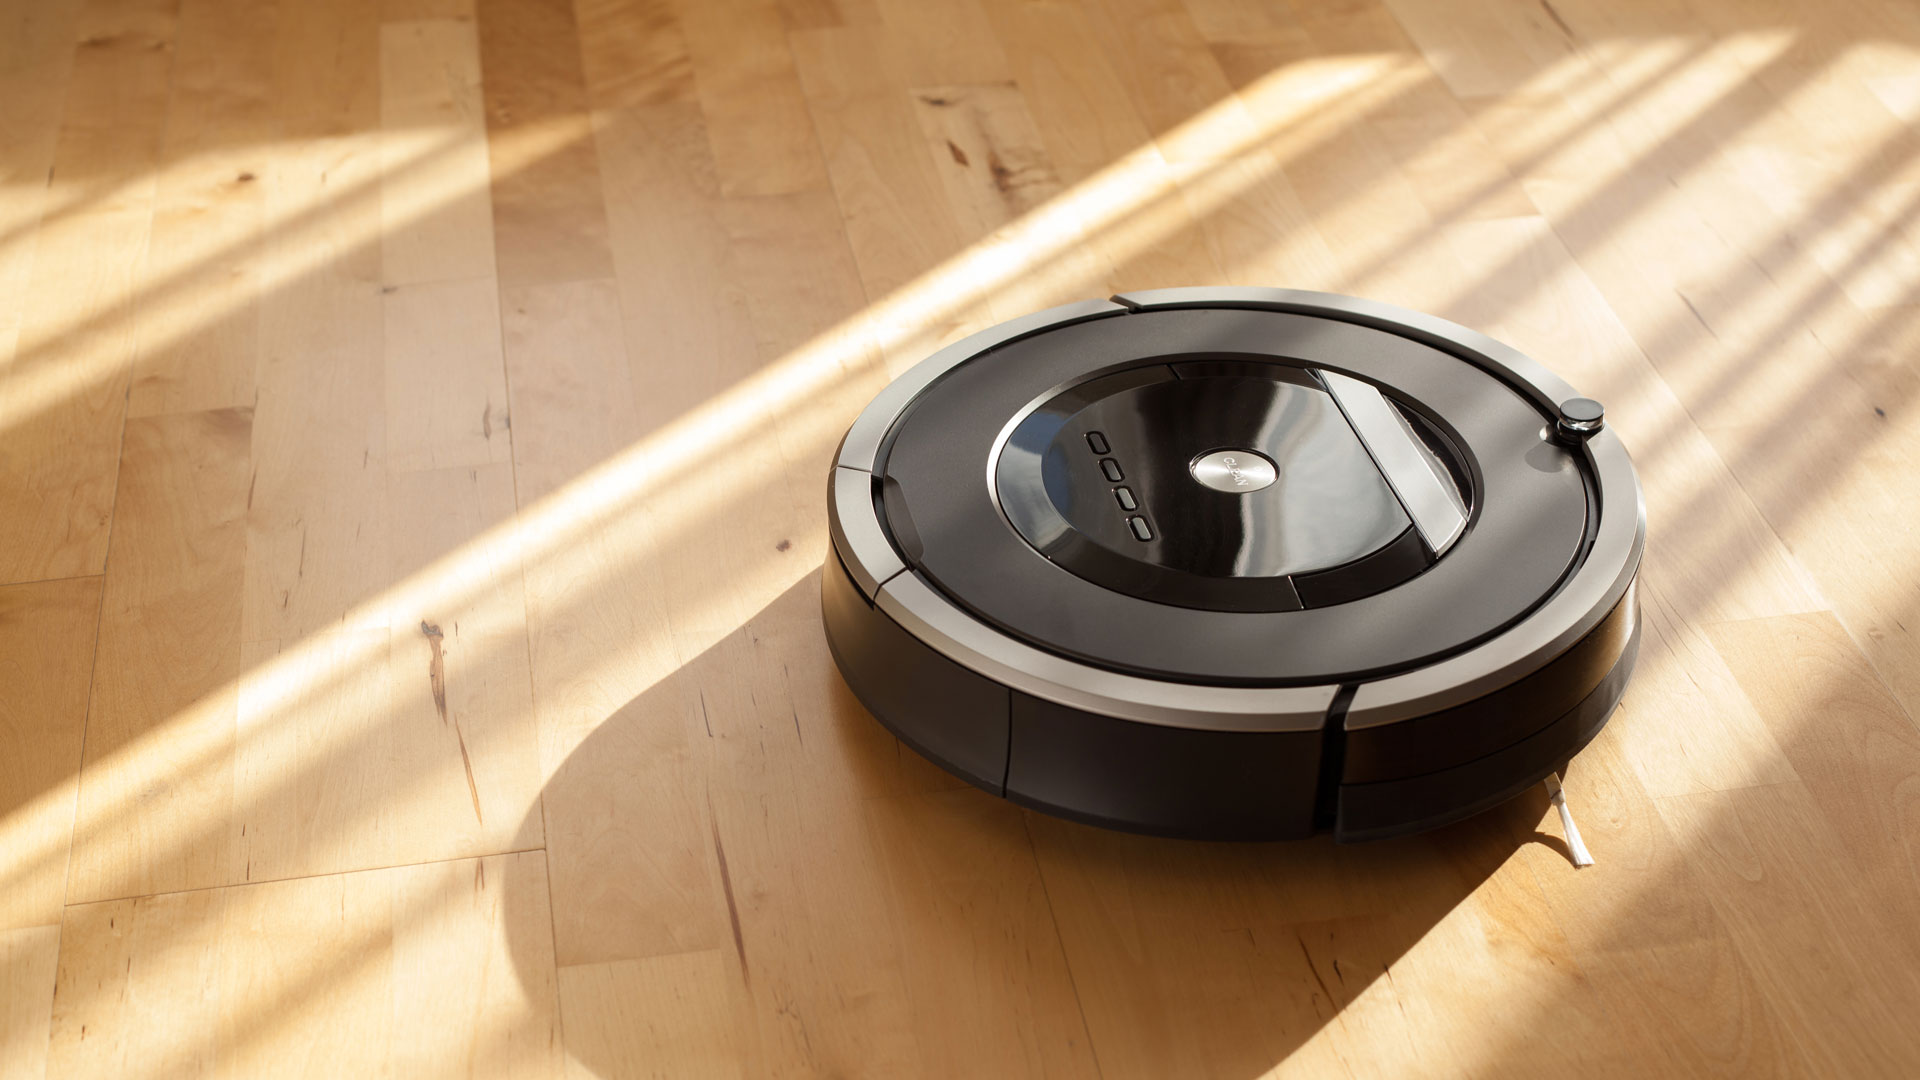 Best Robot Vacuums 2022 Top Ten Reviews, Best Robot Vacuum For Hardwood Floors 2020